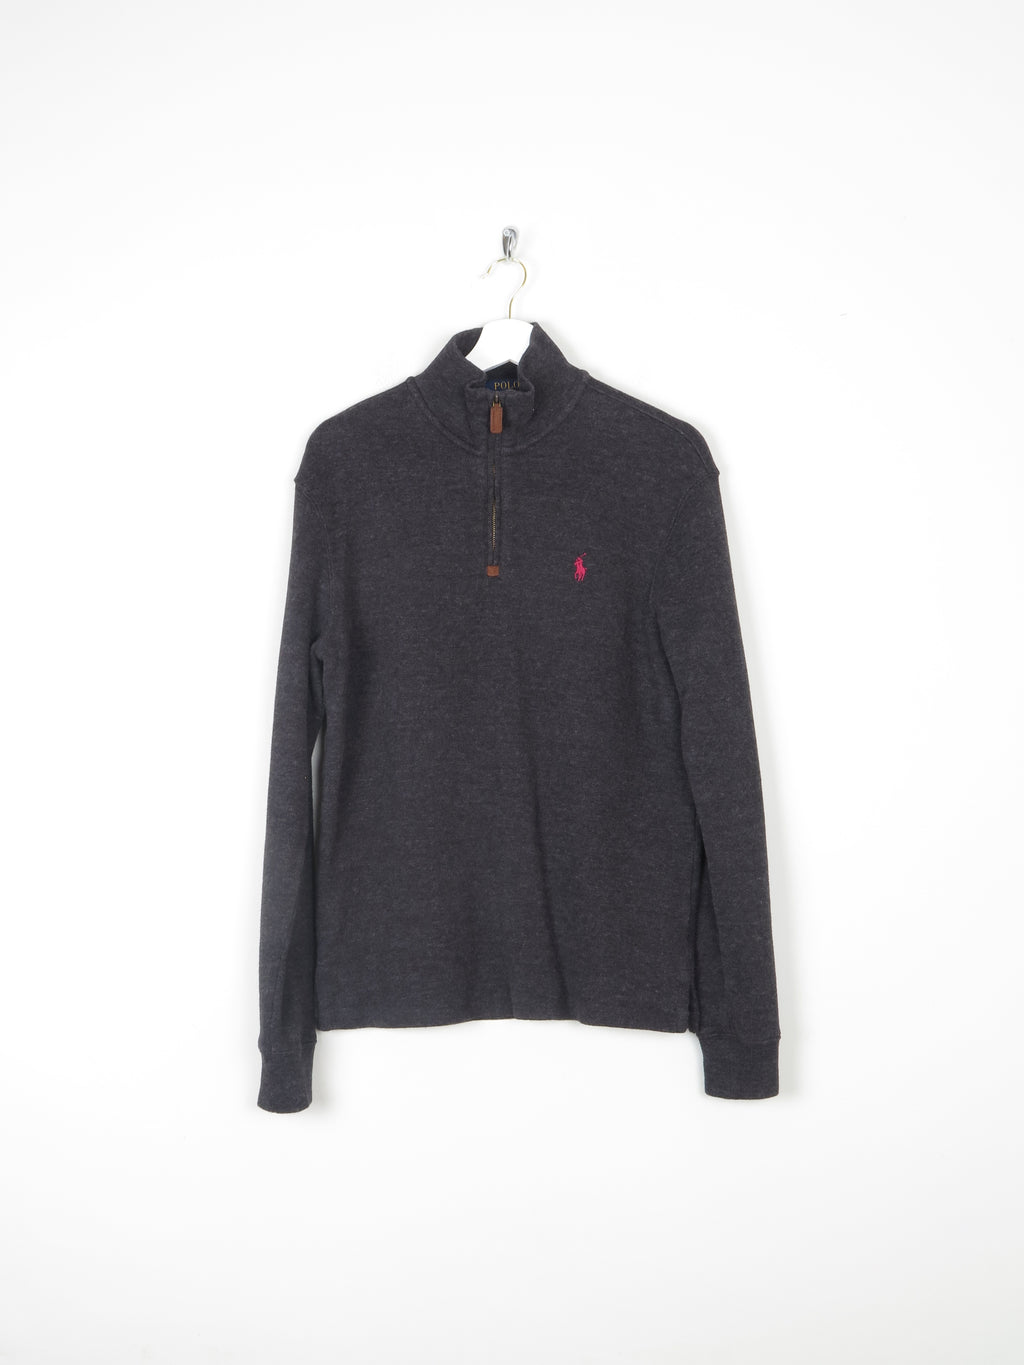 Men's Polo Ralph Lauren Dark Grey 3/4 Zip Top Sweatshirt XS